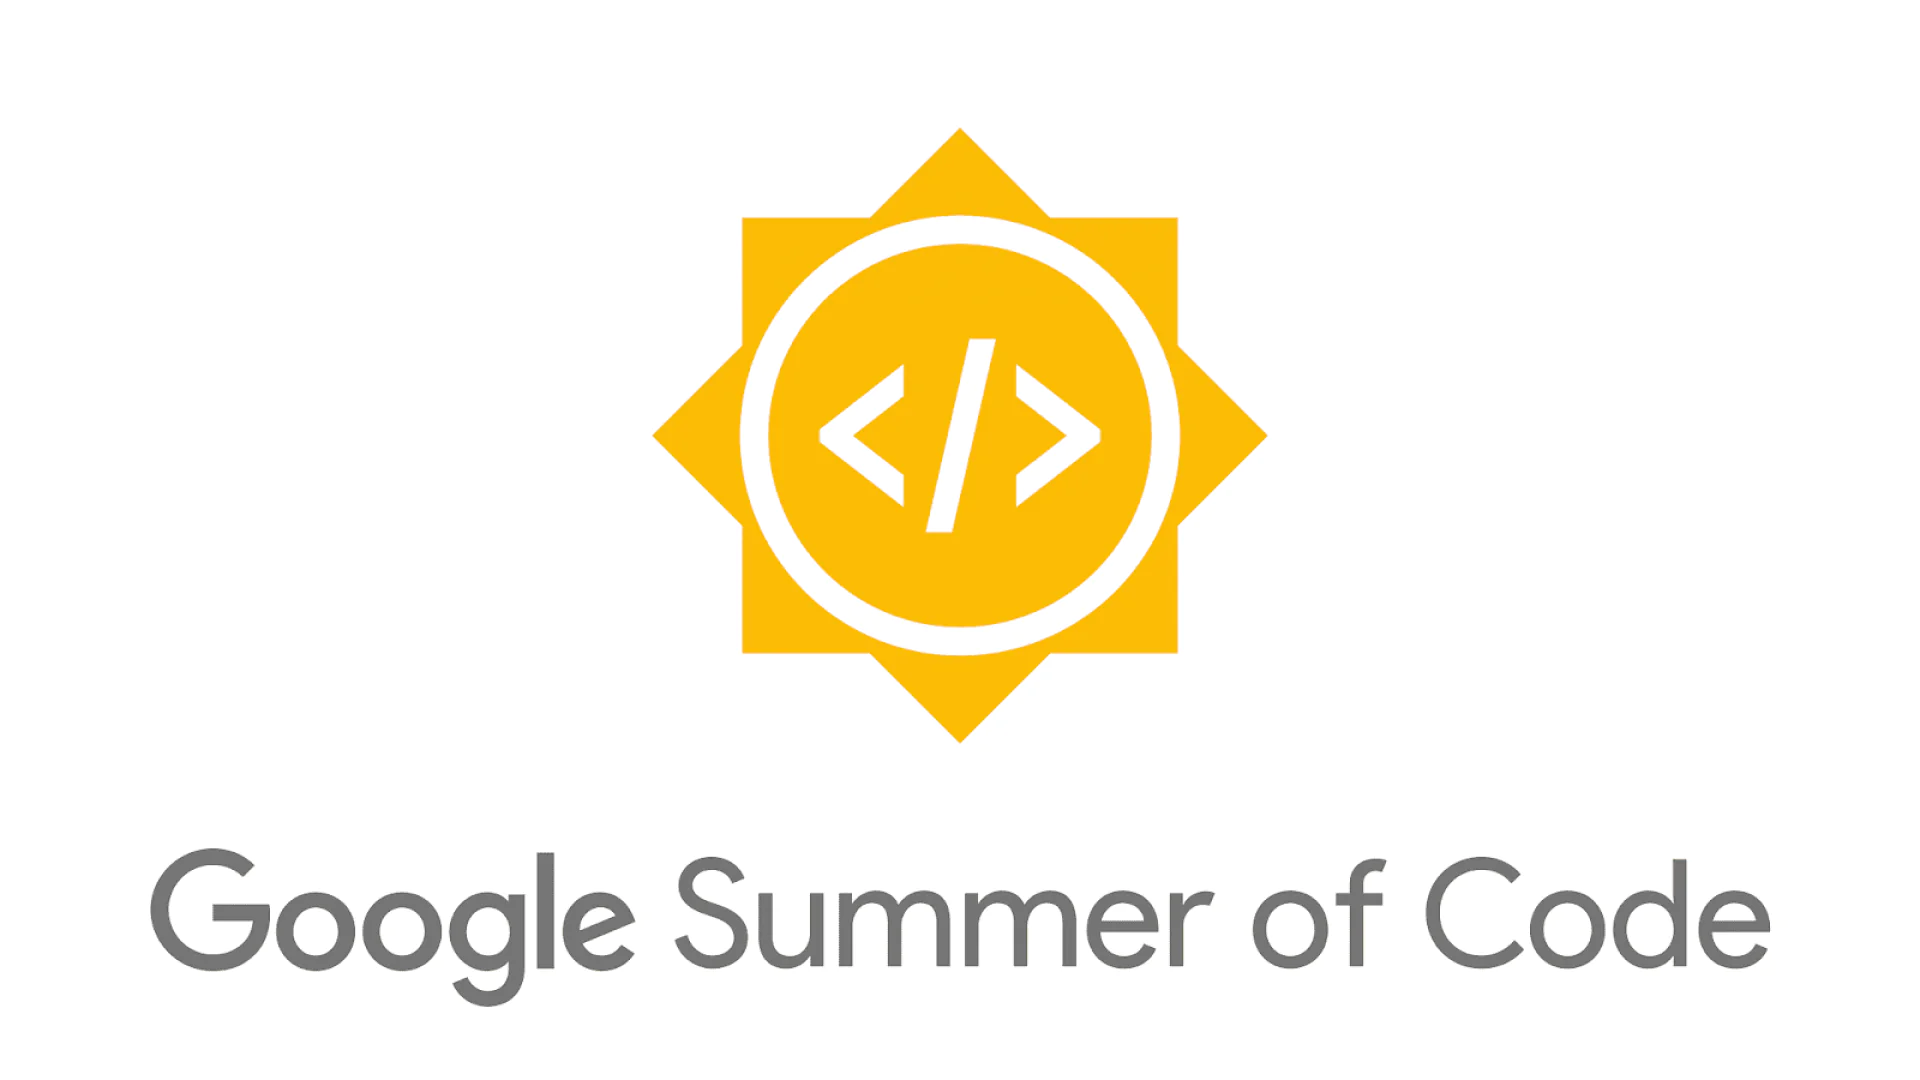 18 yoshdan katta boʻlgan barcha dasturchilar uchun open source development boʻyicha onlayn yozgi dastur — Google Summer of Code